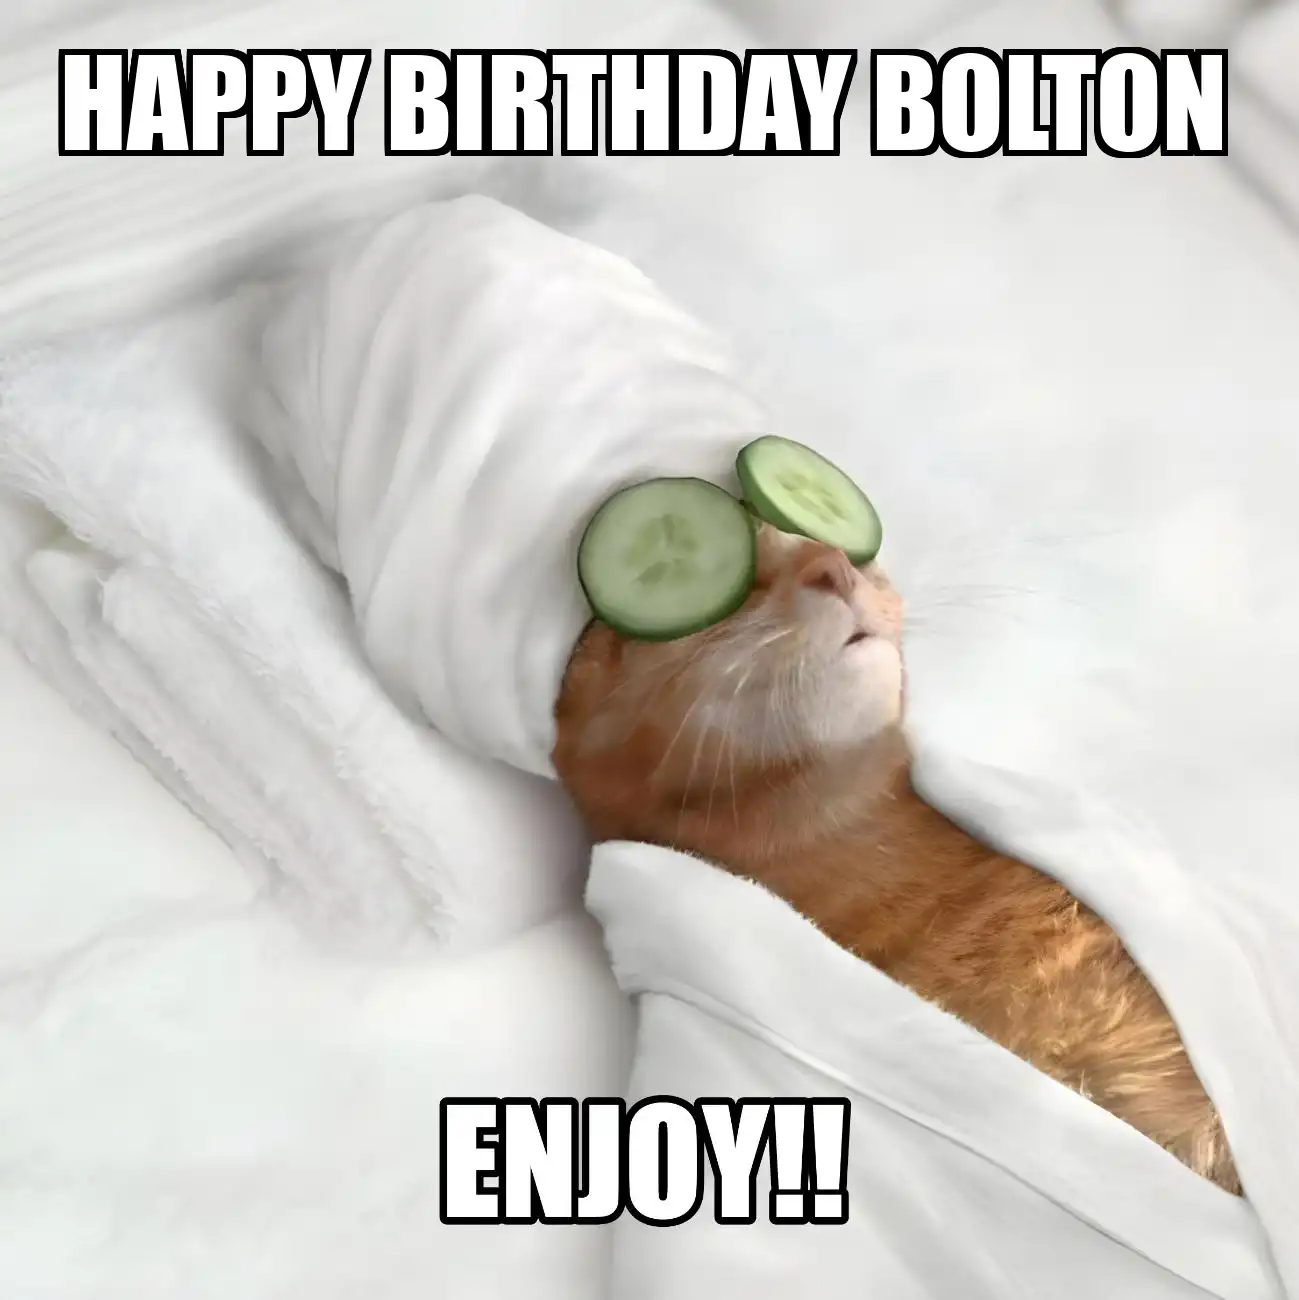 Happy Birthday Bolton Enjoy Cat Meme